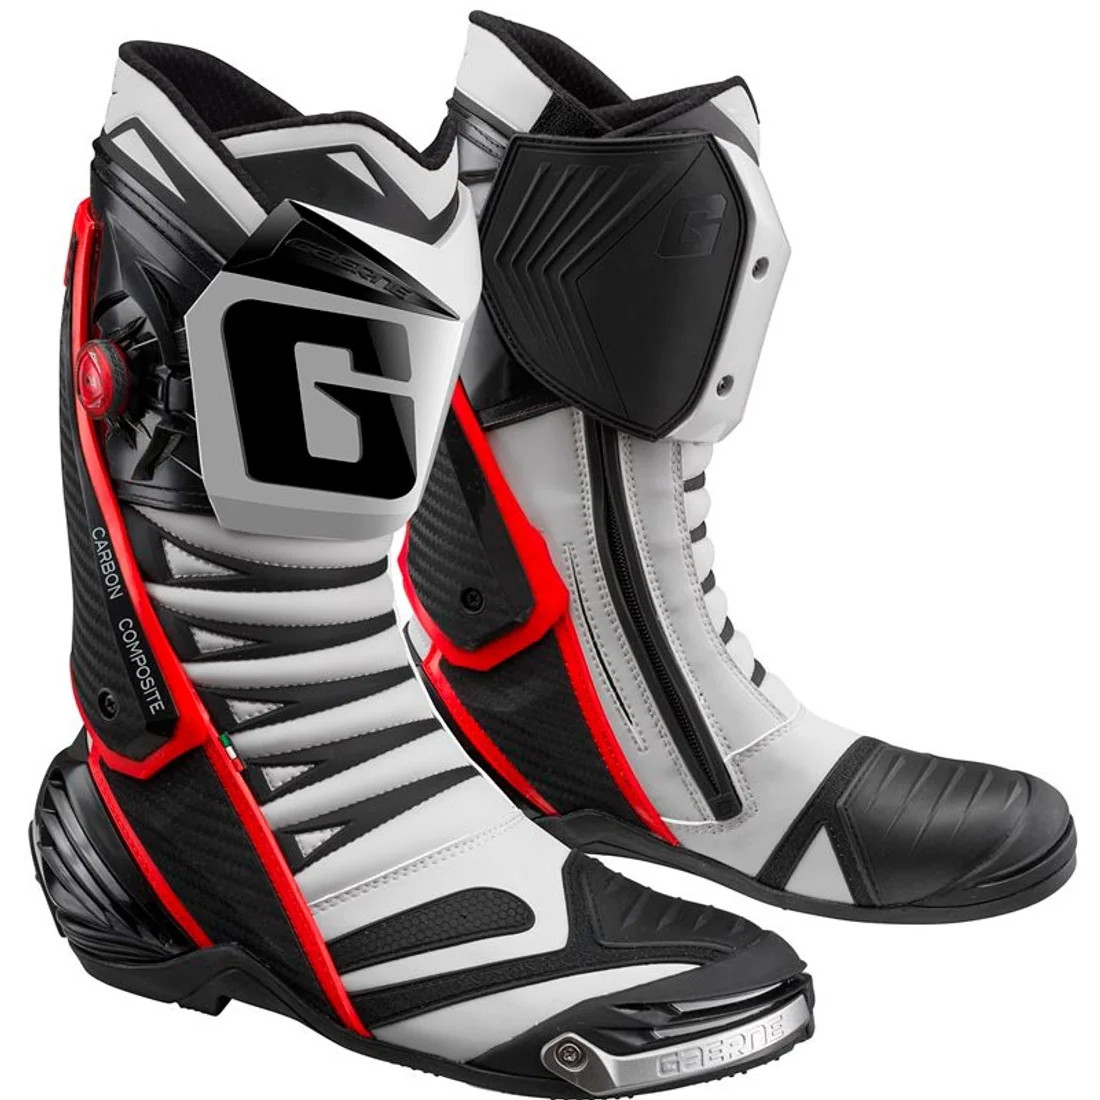 Stivali moto racing Gaerne Gp 1 Evo Grigio Rosso